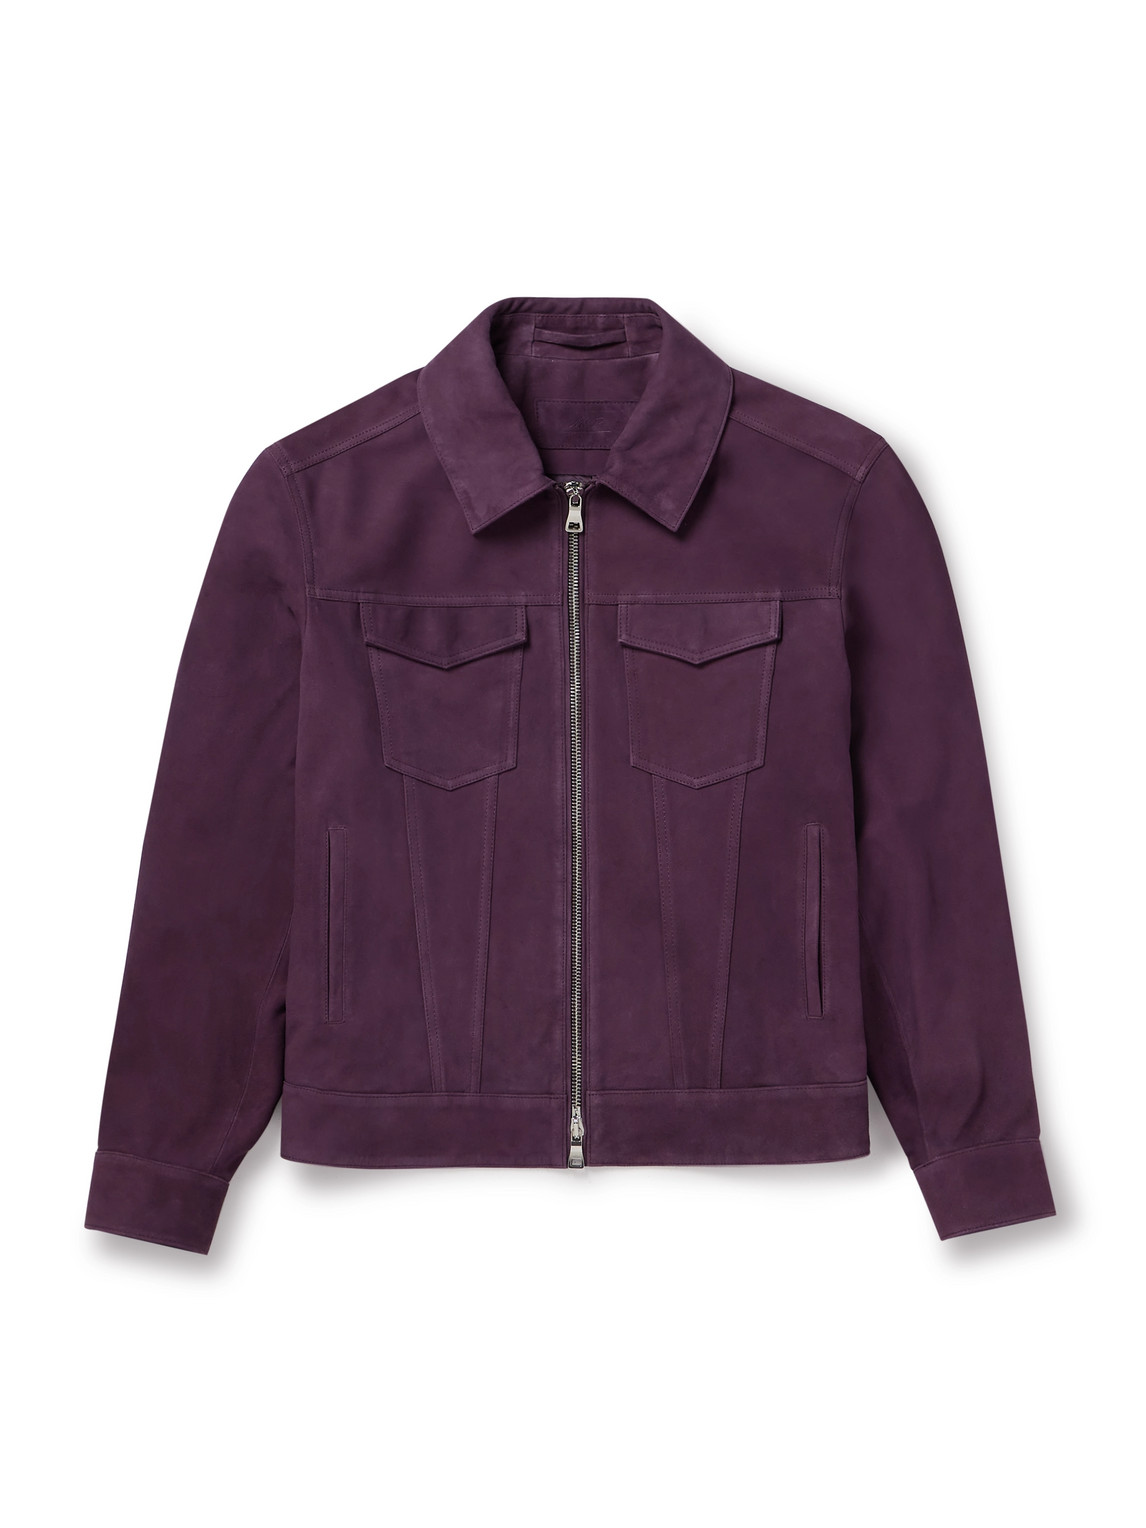 Mr P. - Suede Trucker Jacket - Men - Purple - S von Mr P.